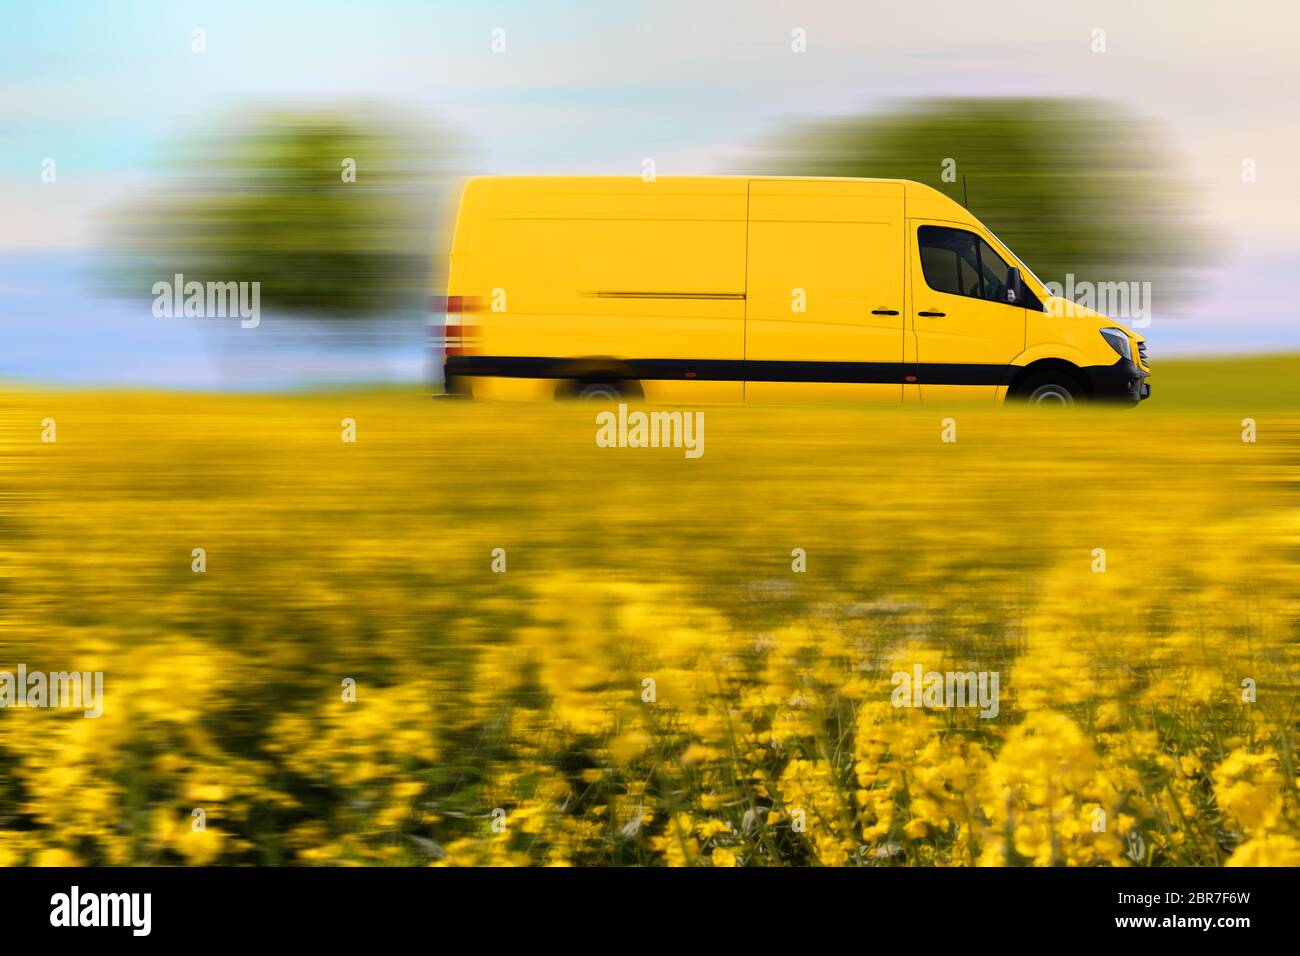 Fast parcel delivery, yellow mail van on country road. Schnelle Paketzustellung, gelber Postwagen auf einer Landstraße. Stock Photo